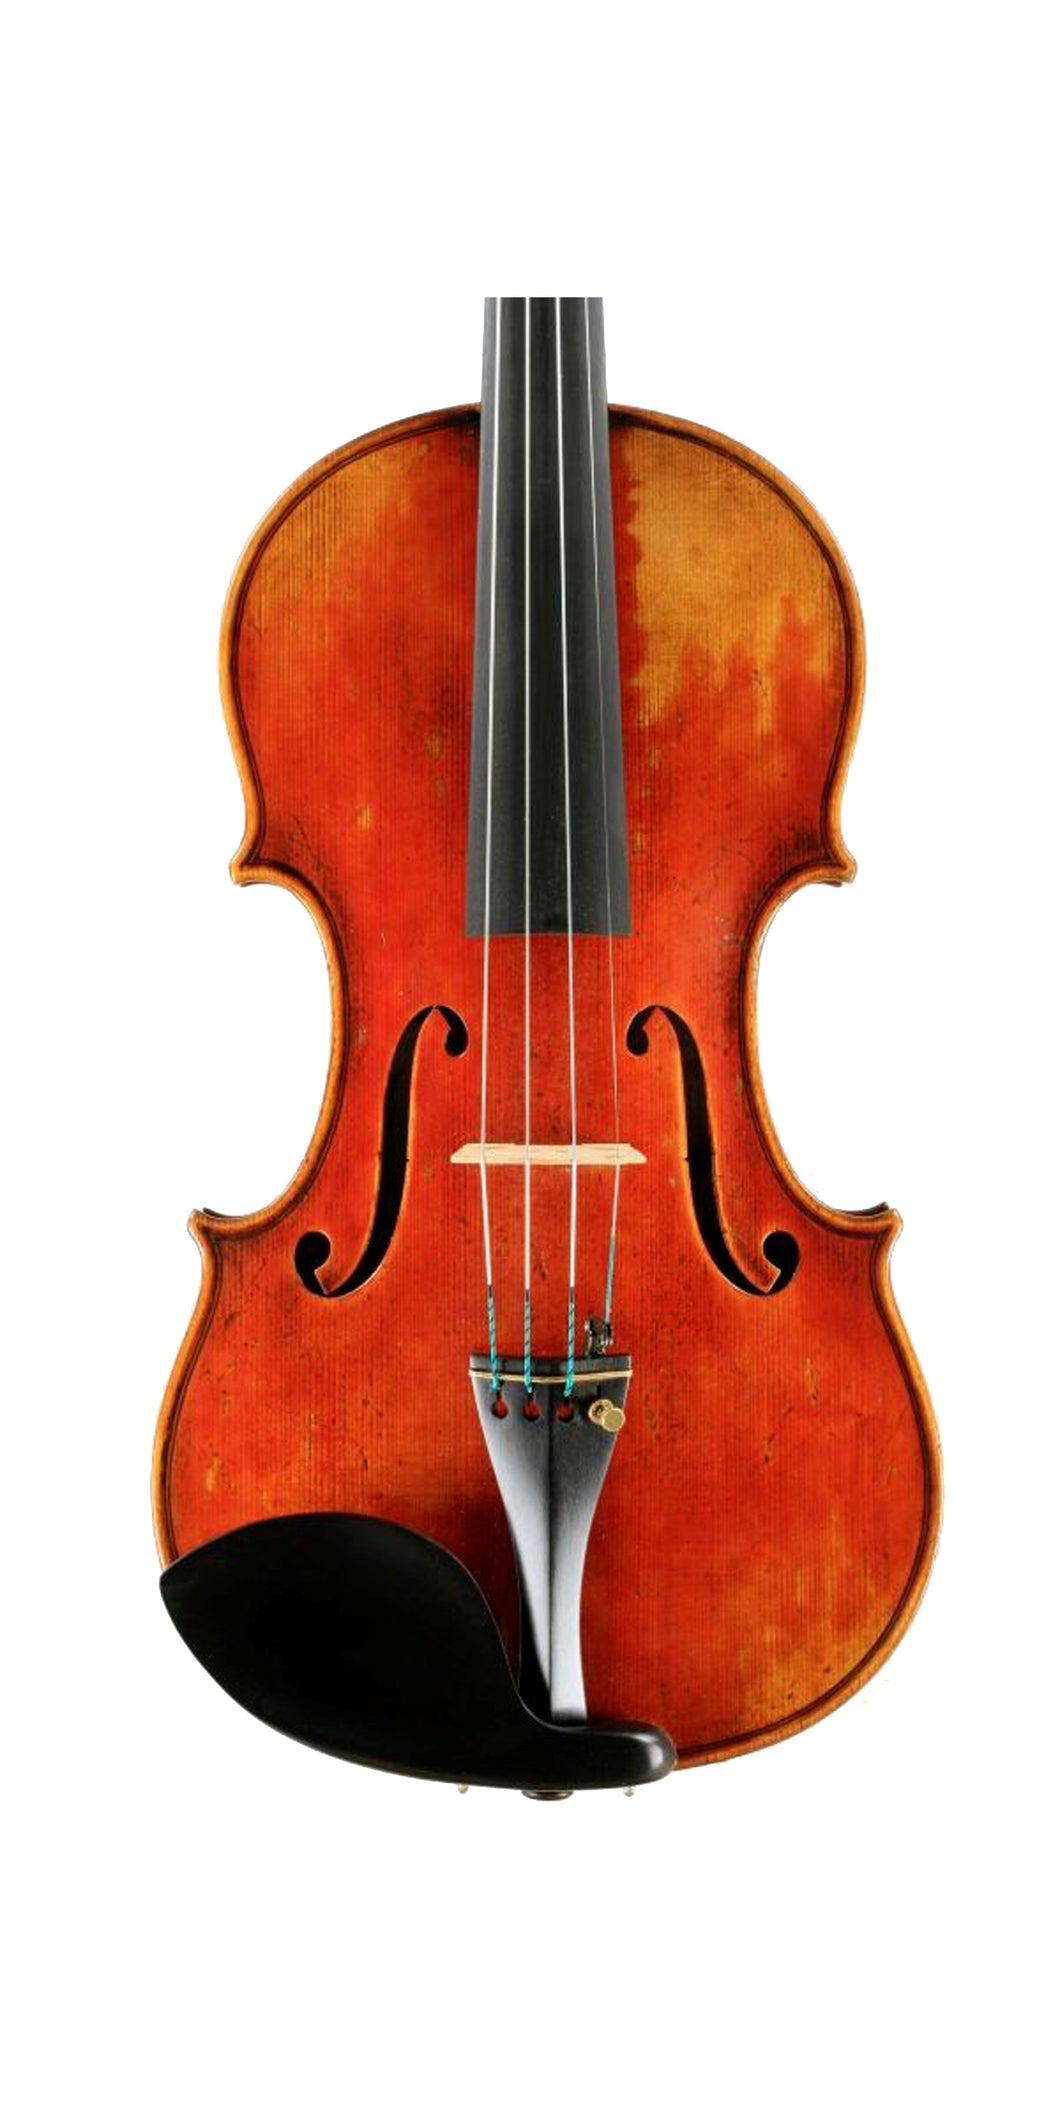 Jay Haide à l'ancienne Violin